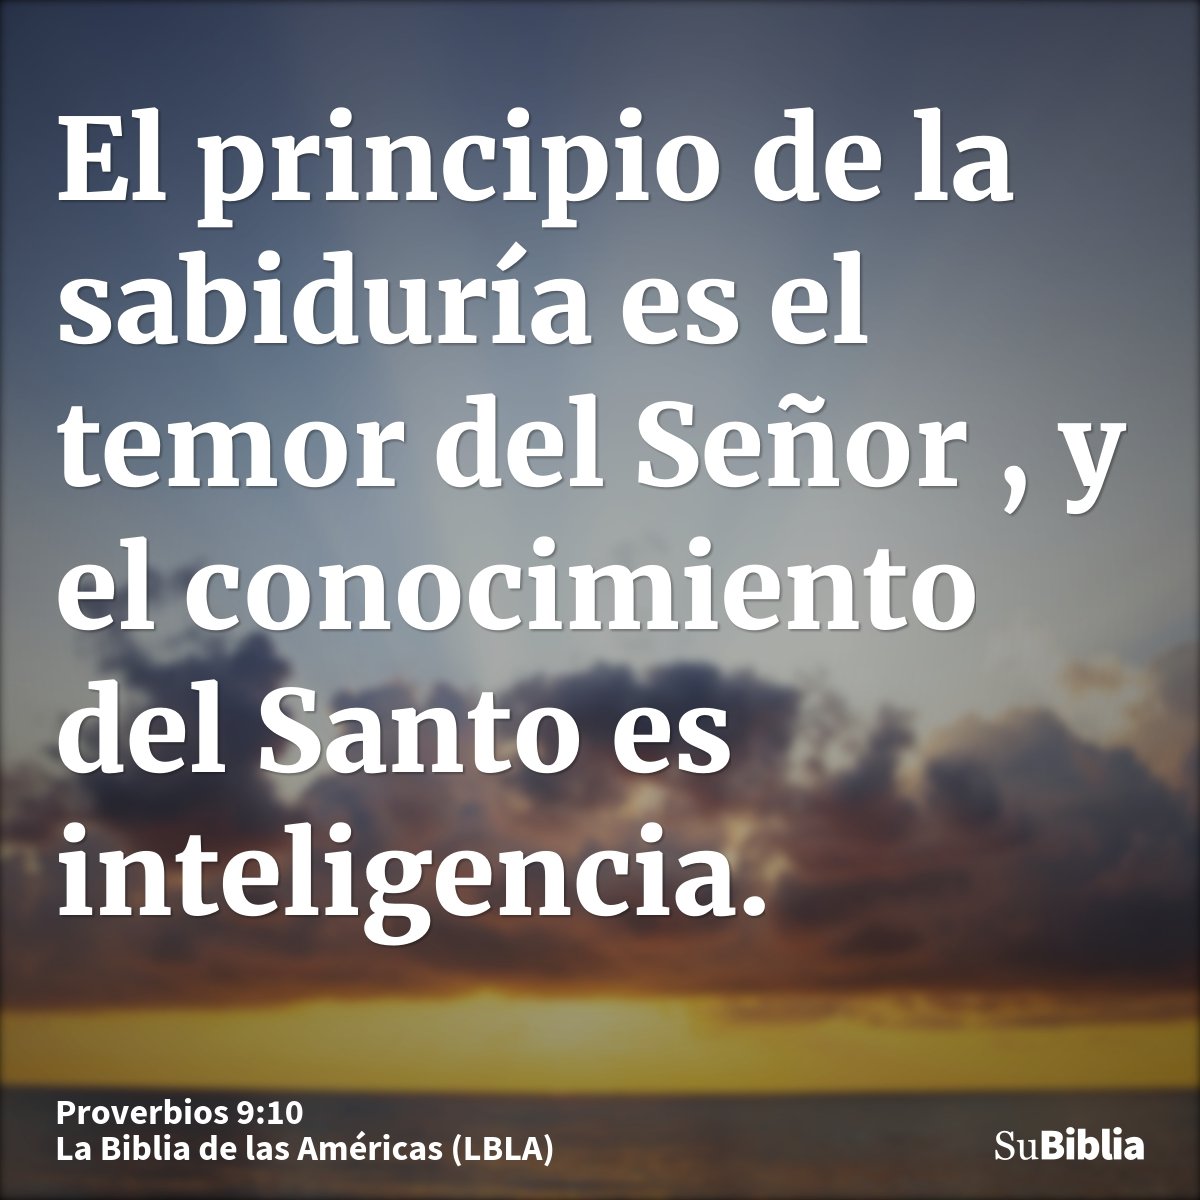 El principio de la sabiduría es el temor del Señor , y el conocimiento del Santo es inteligencia.